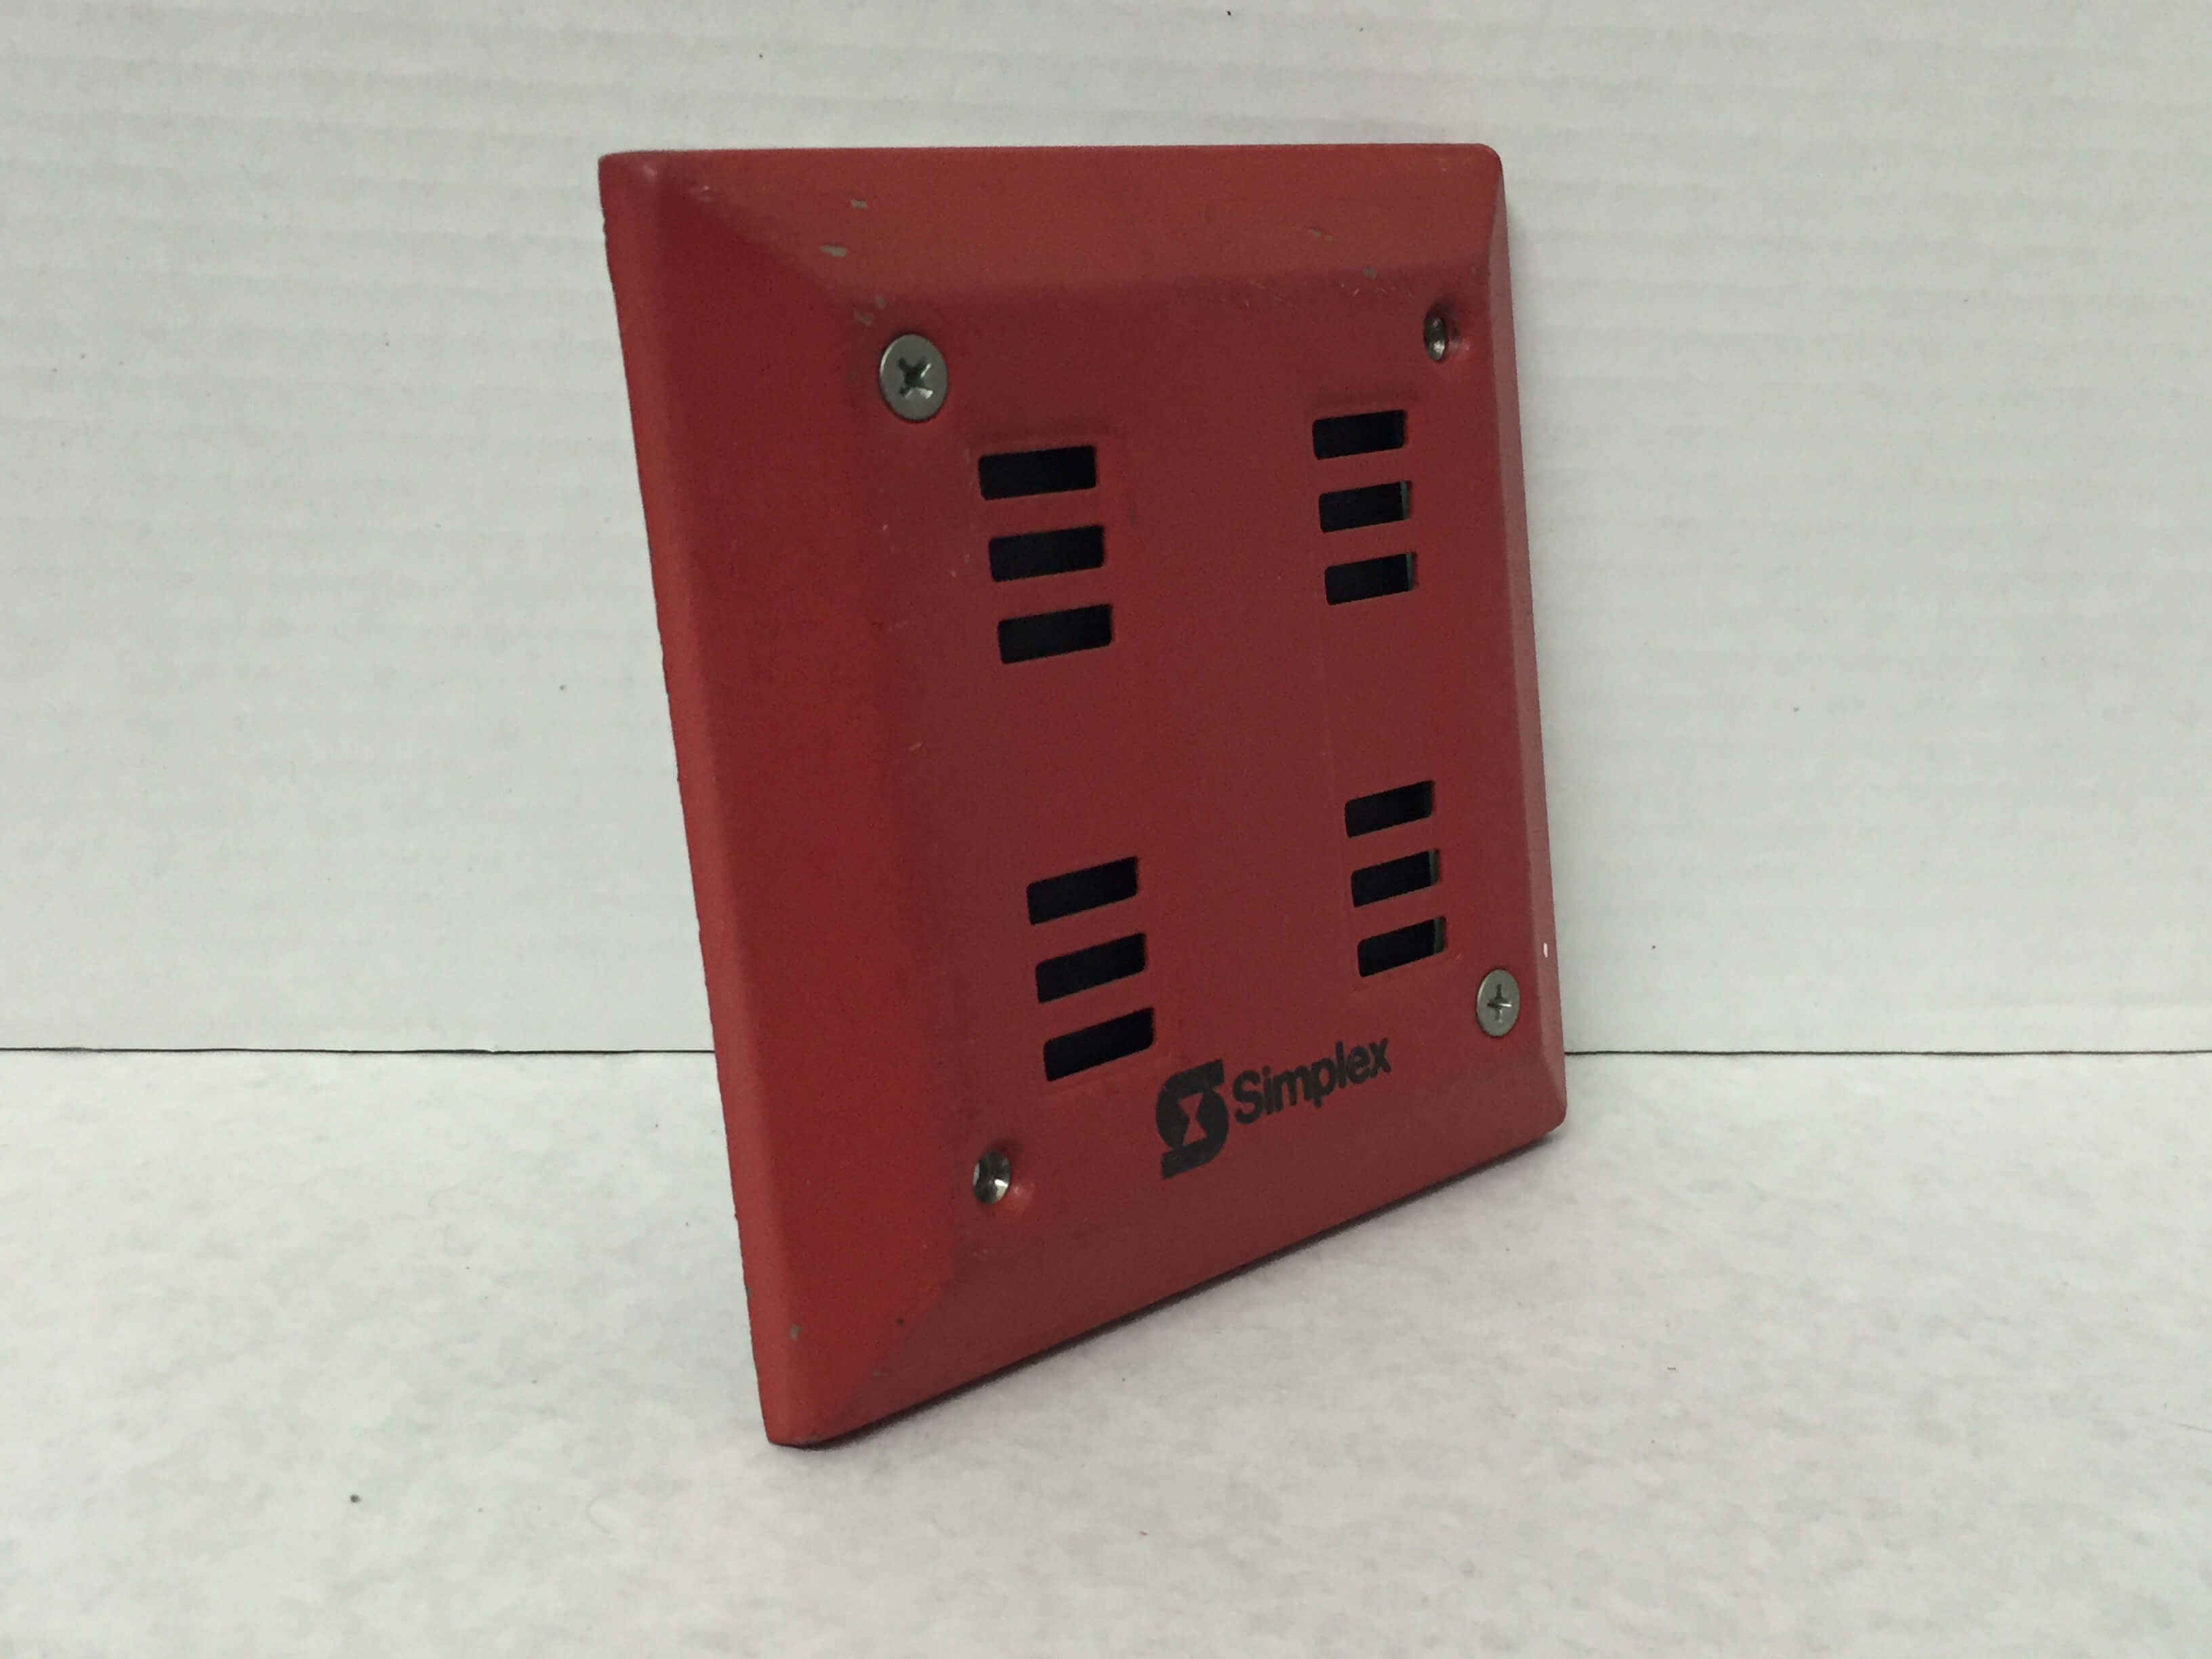 Simplex 2901-9840 - FireAlarms.tv - jjinc24/U8oL0's Fire Alarm ...